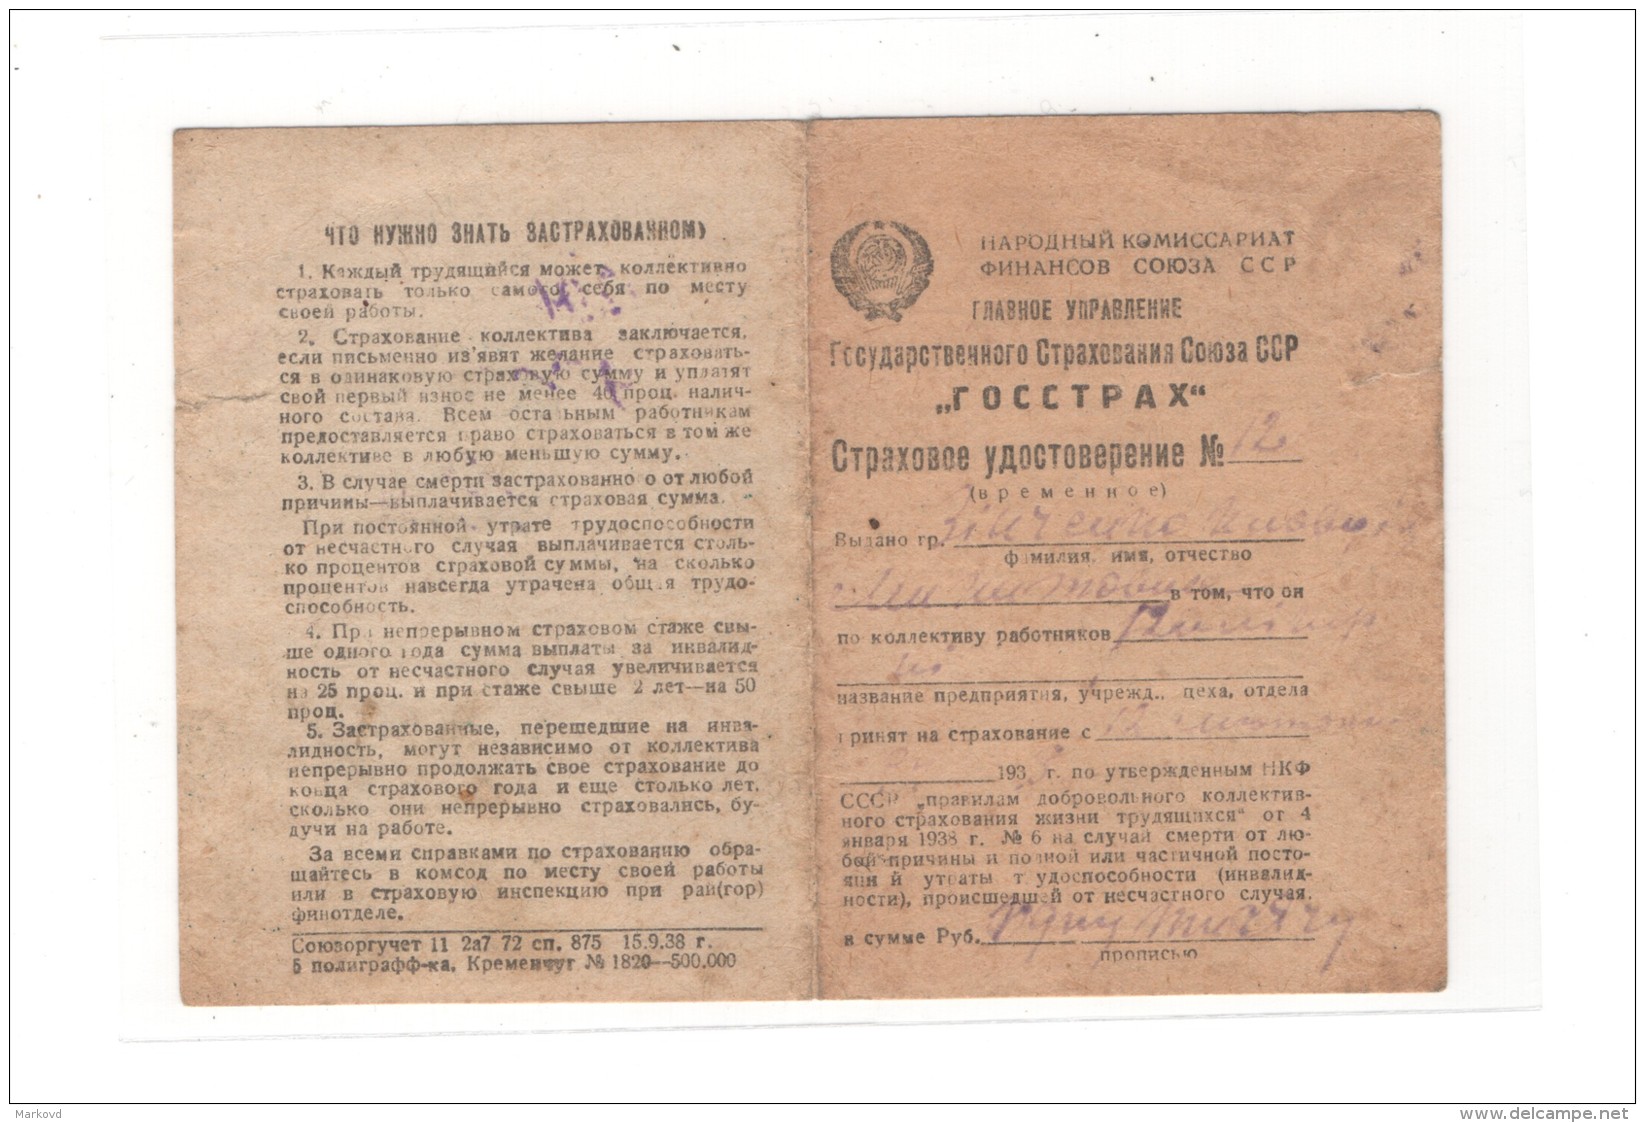 Revenue USSR Insurance 1938-39 - Revenue Stamps